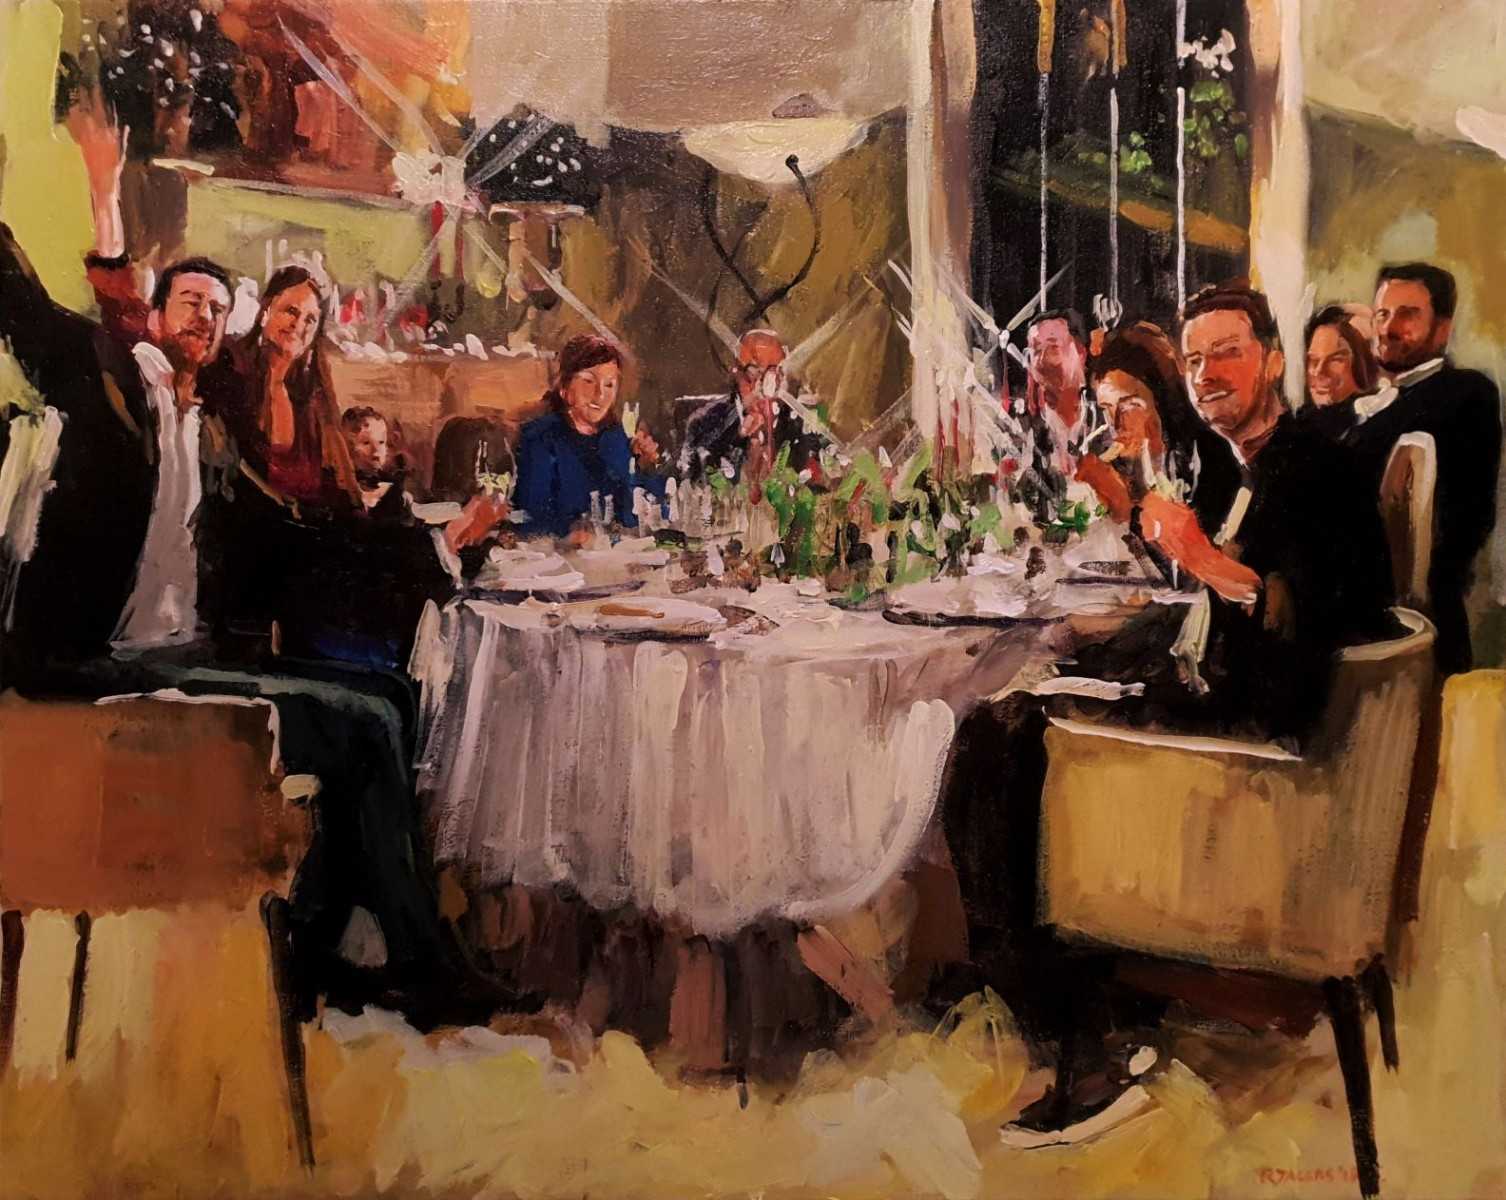 Rob Jacobs schildert doek van 80x100cm tijdens het diner in Brasschaat, Antwerpen.